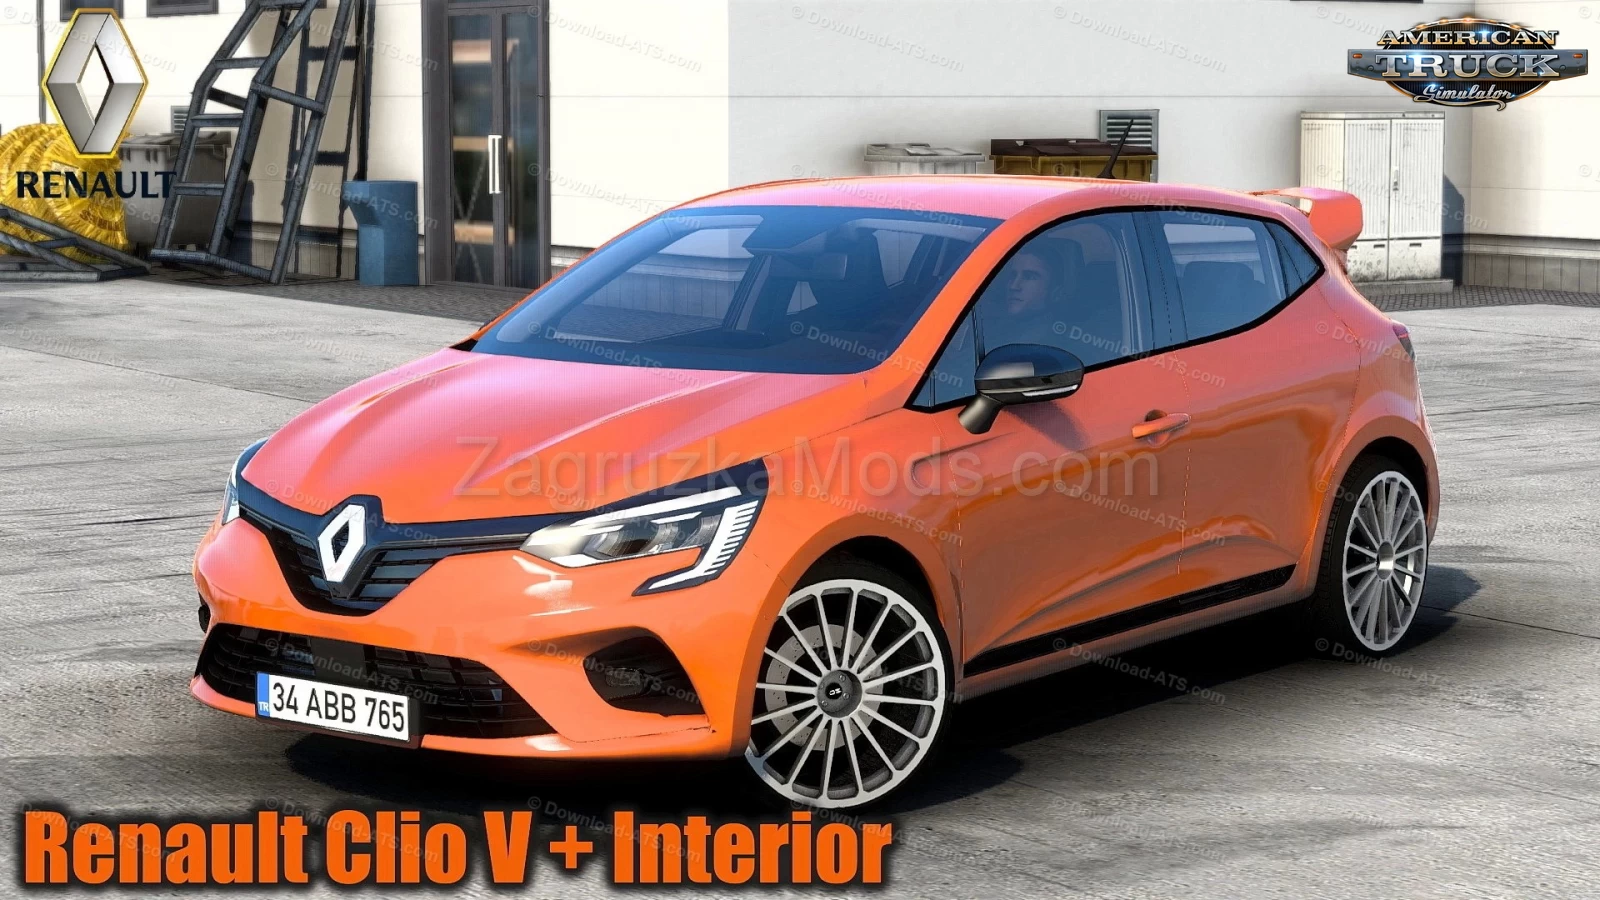 Renault Clio V + Interior v2.0 (1.44.x) for ATS